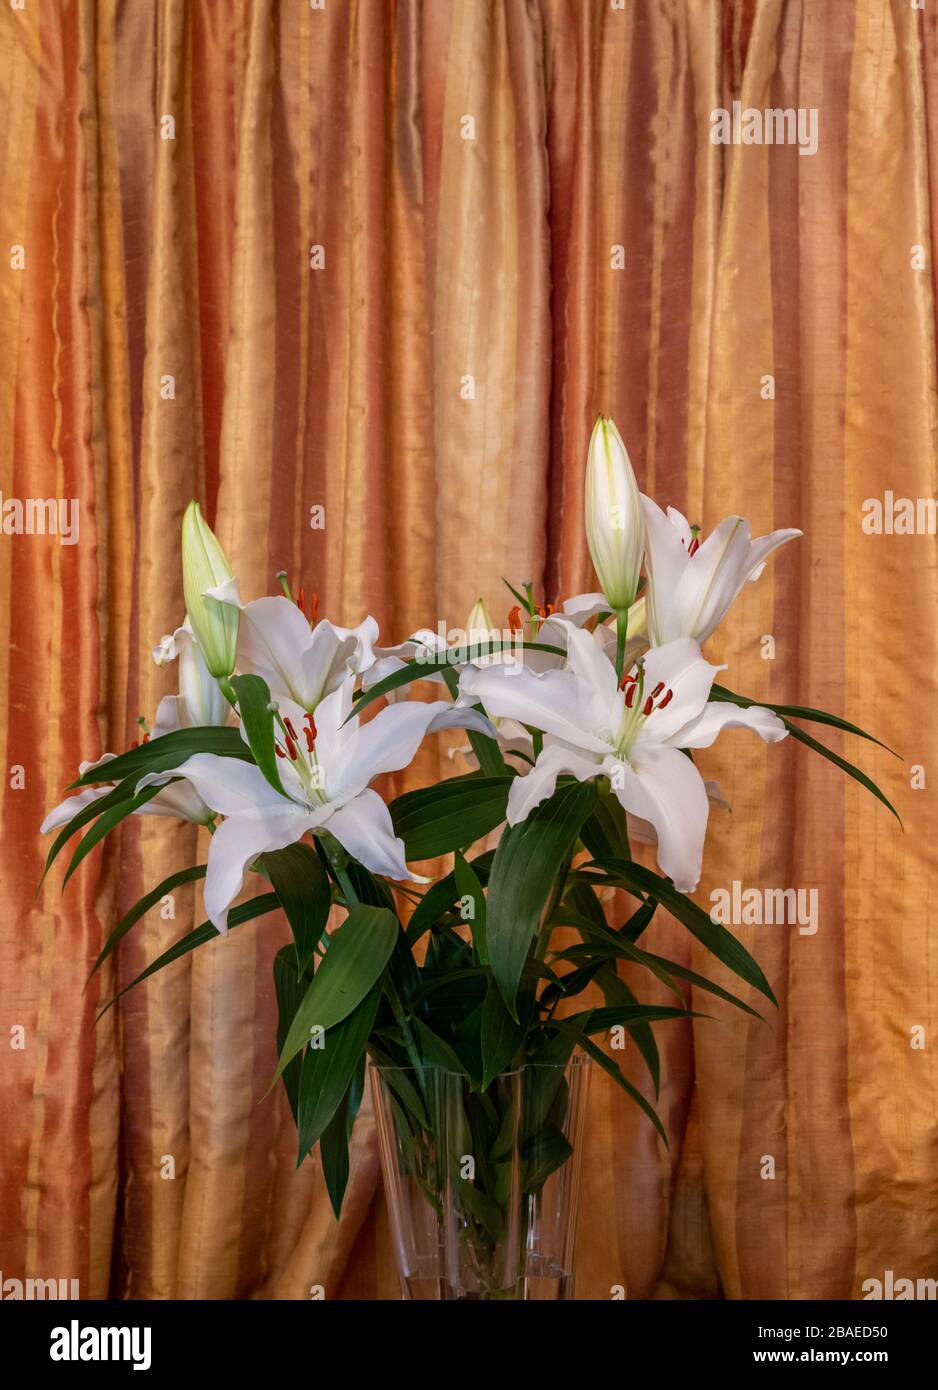 Photo de vie de l'intérieur avec des fleurs de lys coupées dans un vase avec des rideaux en soie dorée comme toile de fond. Banque D'Images